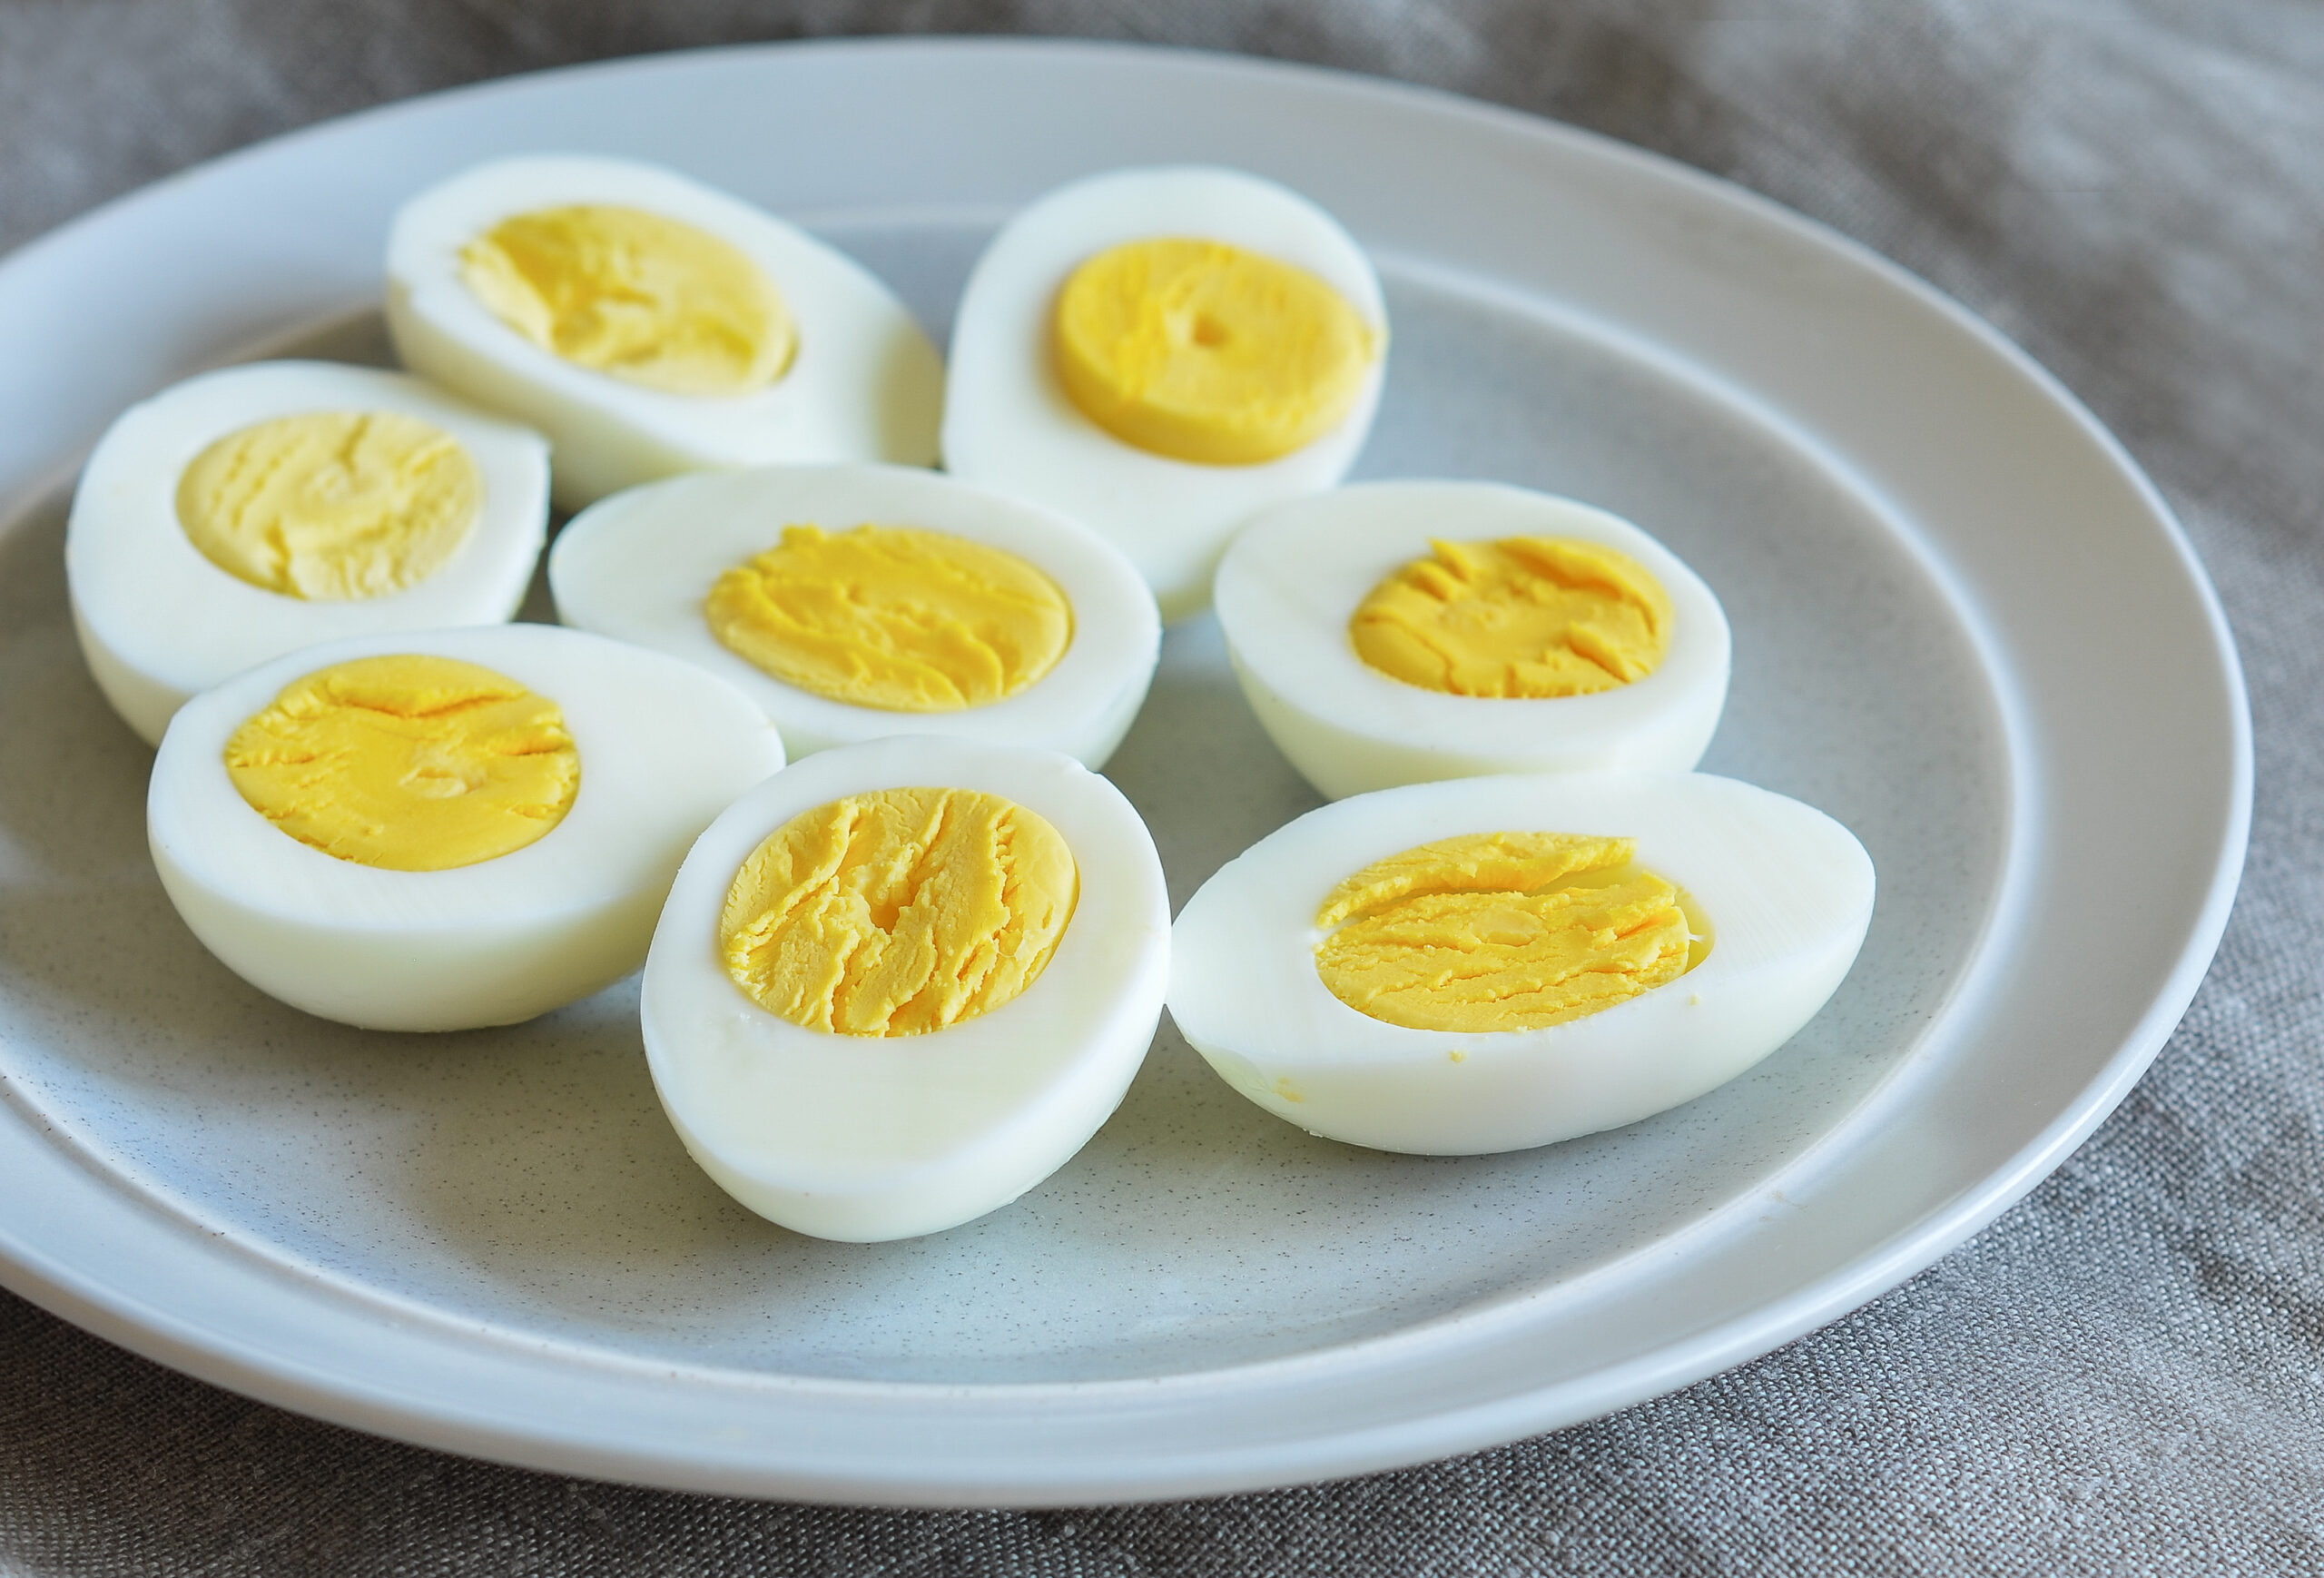 Trứng chứa protein chất lượng cao, chất béo lành mạnh, là một trong những thực phẩm tăng cơ được nhiều người yêu thích.